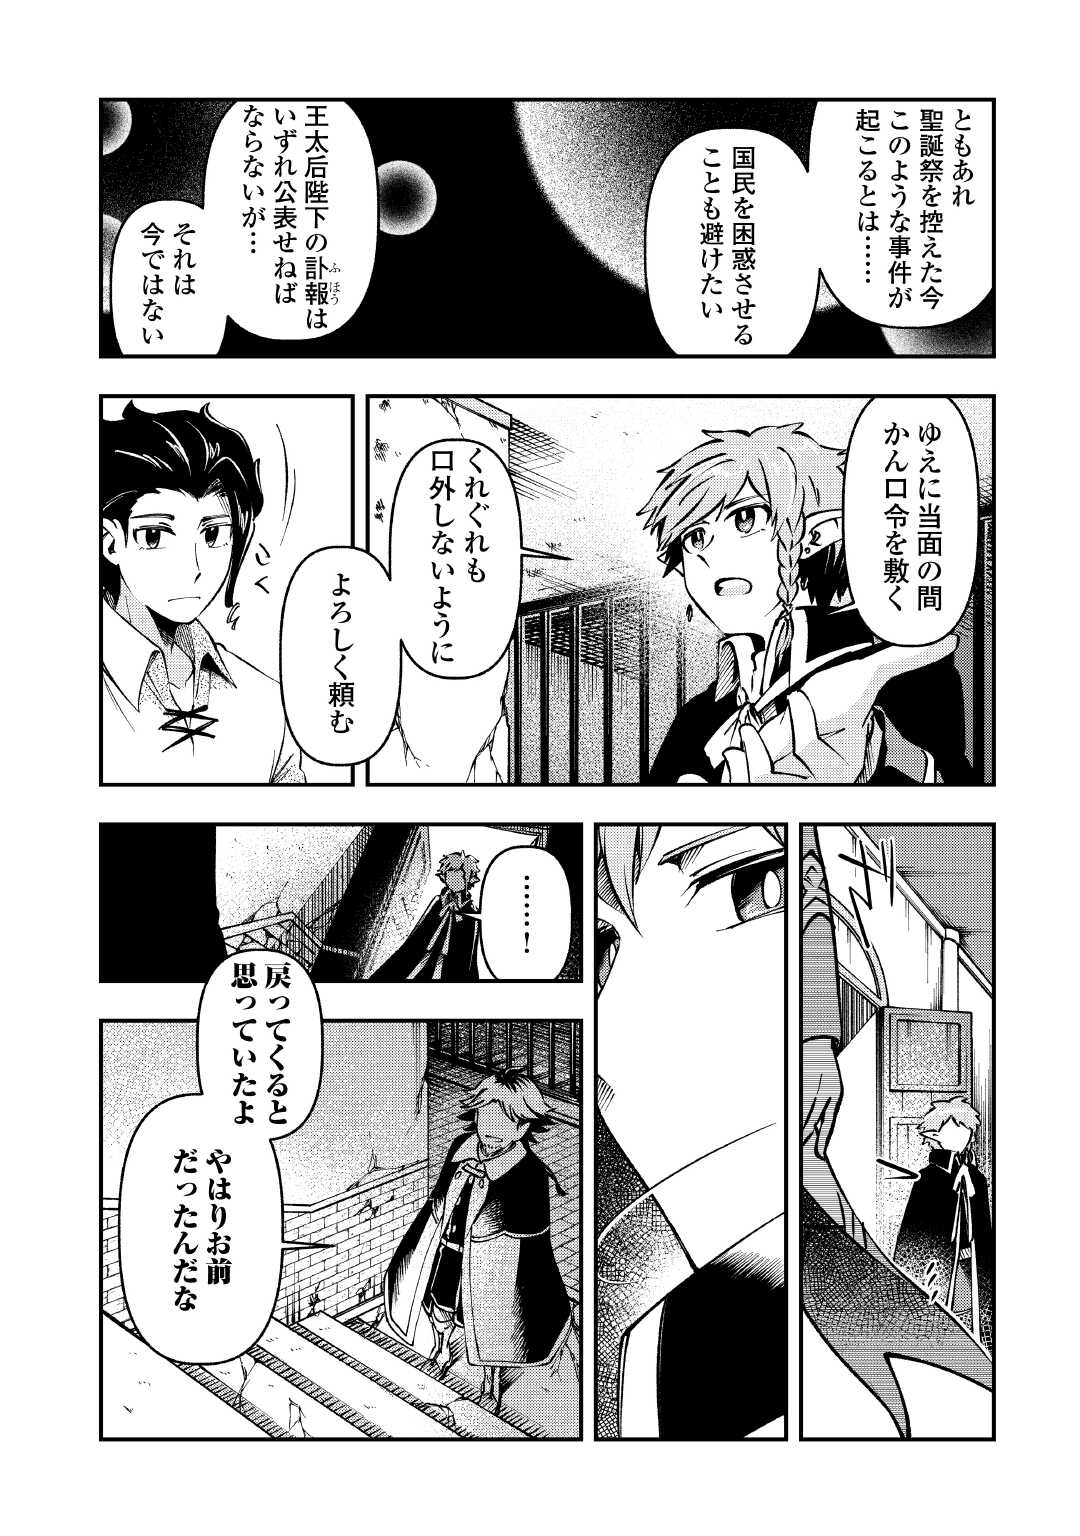 Osanago wa Saikyou no Tamer da to Kizuiteimasen! - Chapter 12 - Page 6